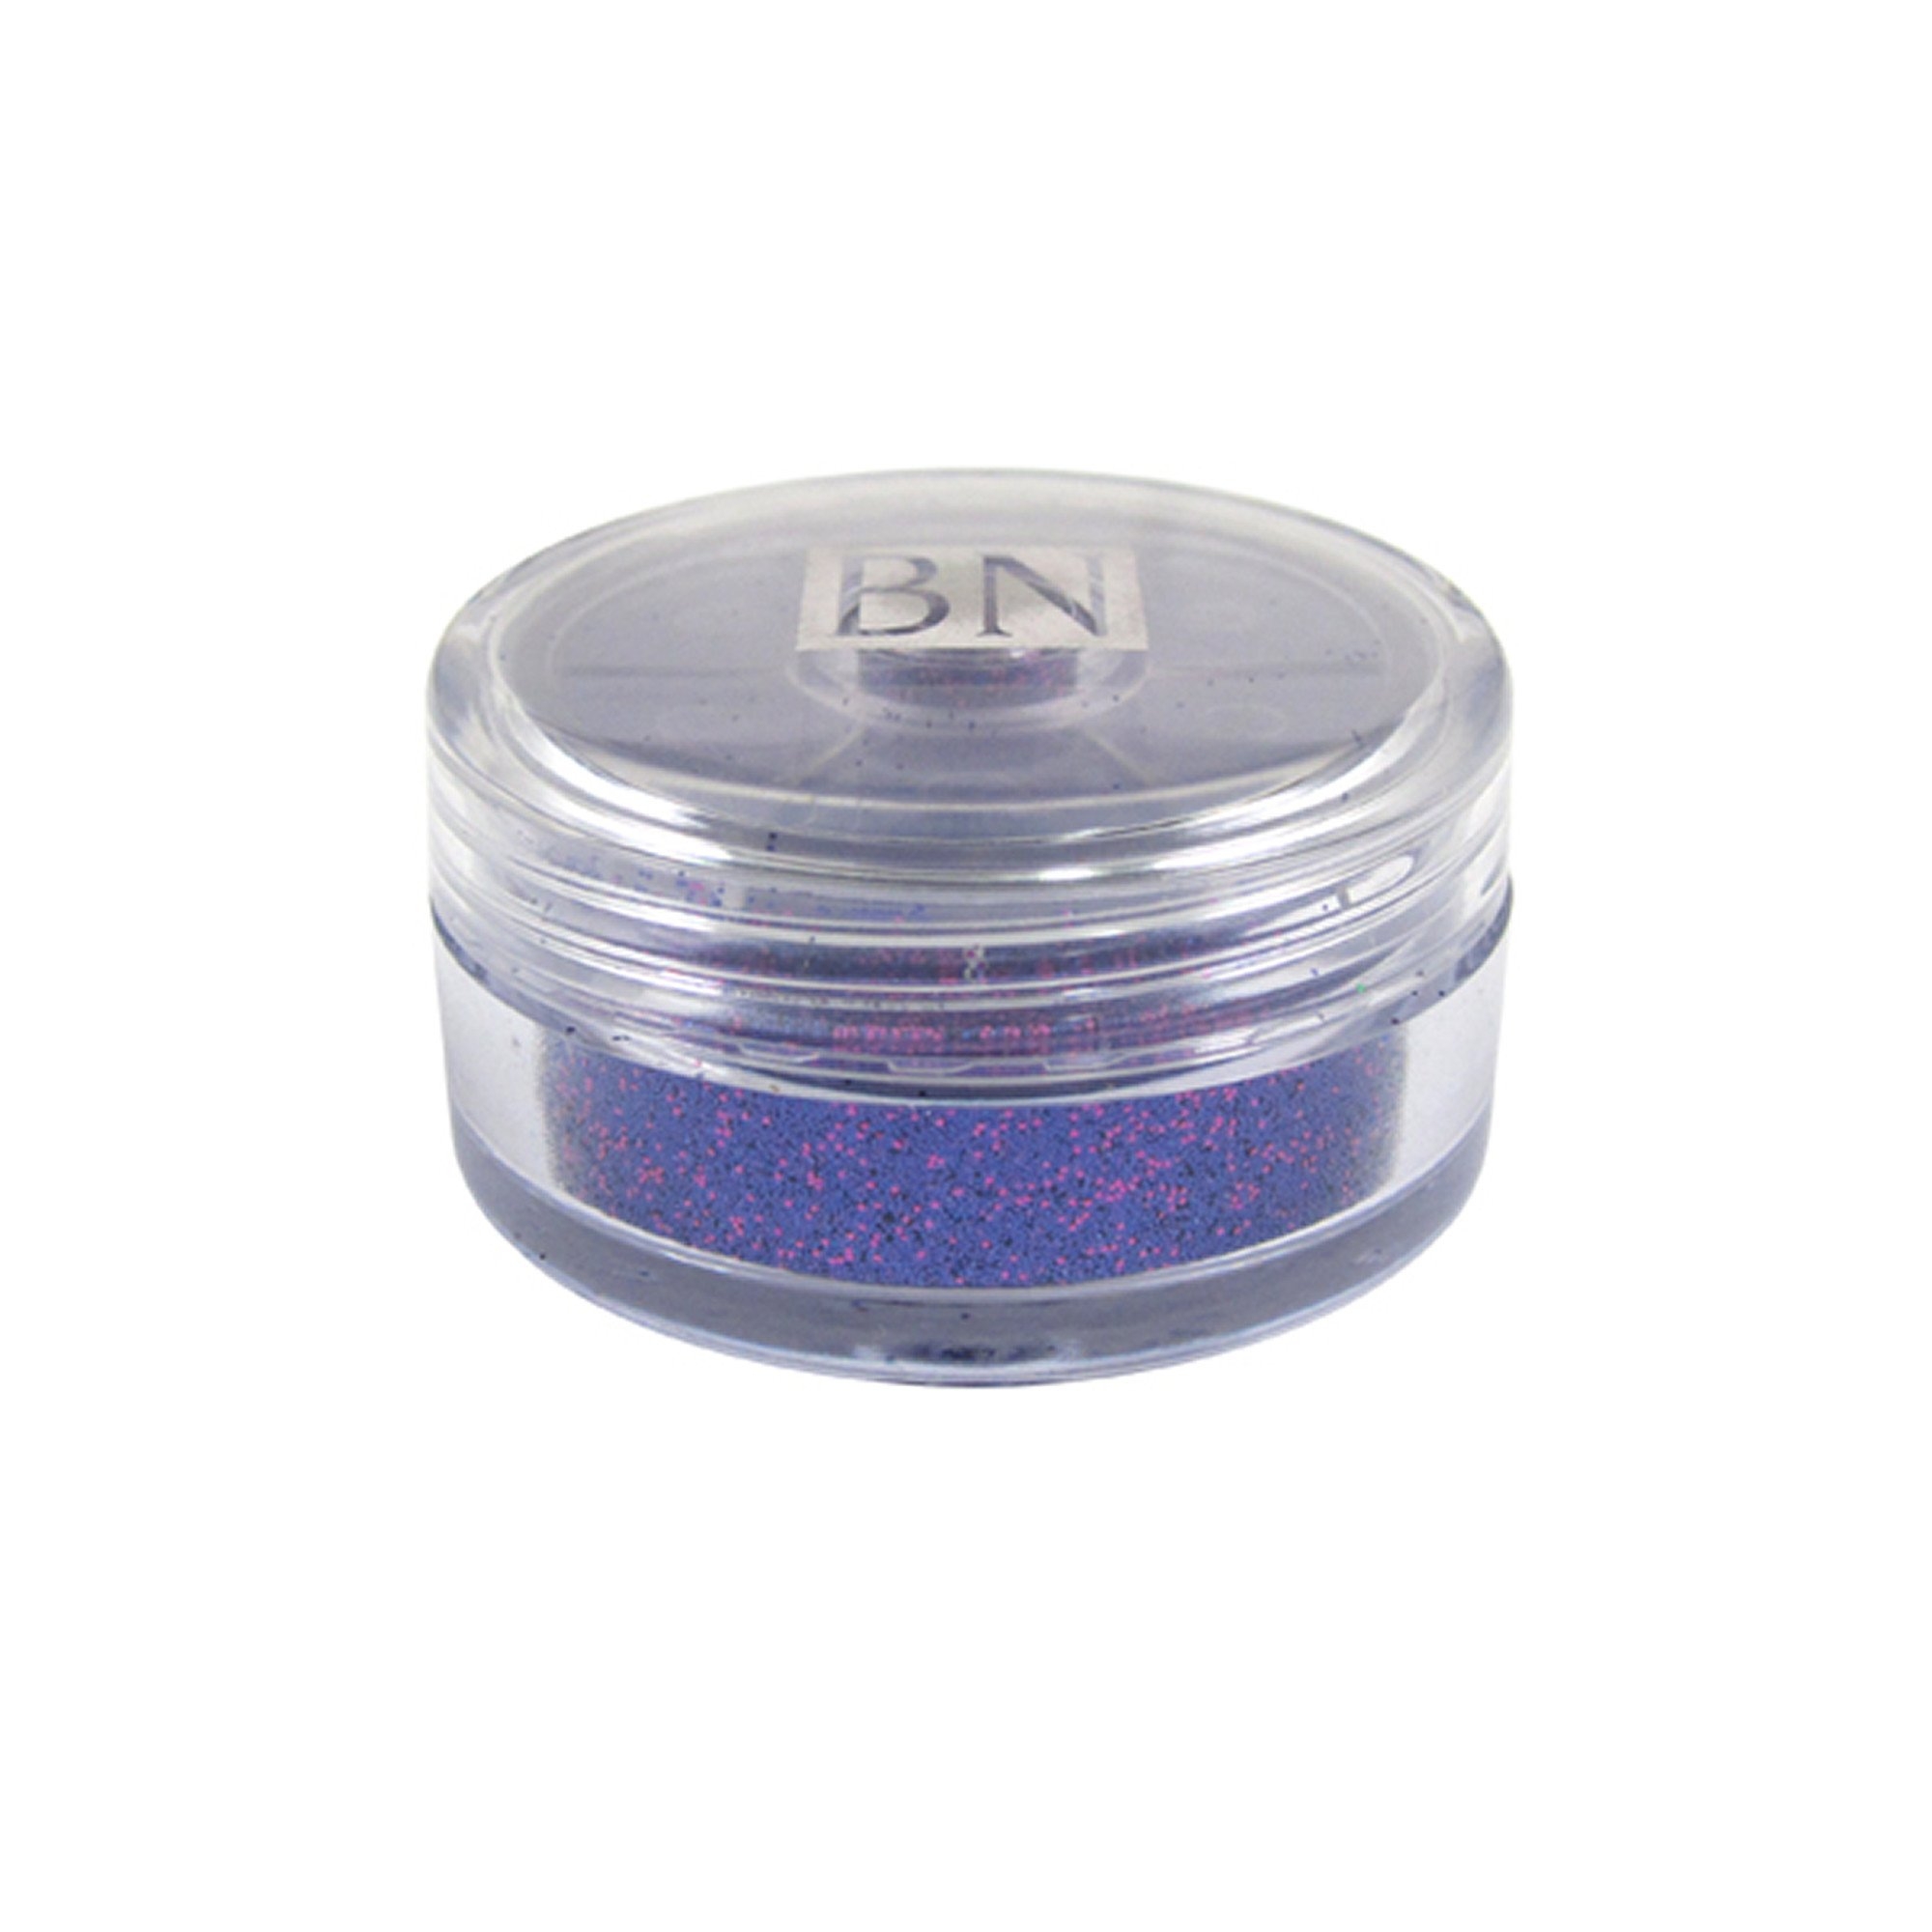 Ben Nye Sparklers Loose Glitter Brilliant Purple, 4gr